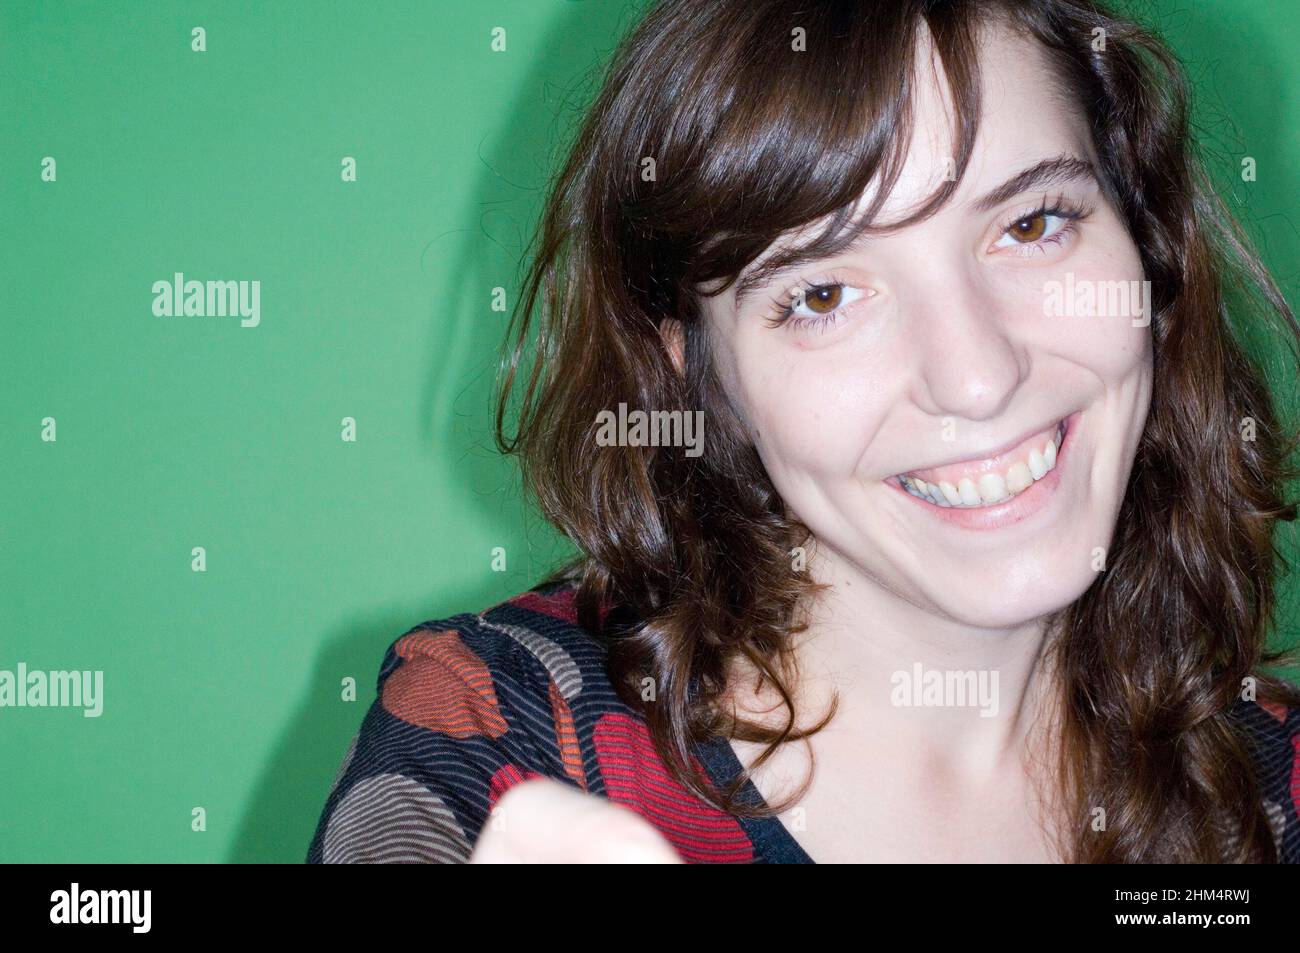 Ritratto di una donna di adulto medio sorridente, accreditamento:Fotoshot Creative / Stuart Cox / Avalon Foto Stock